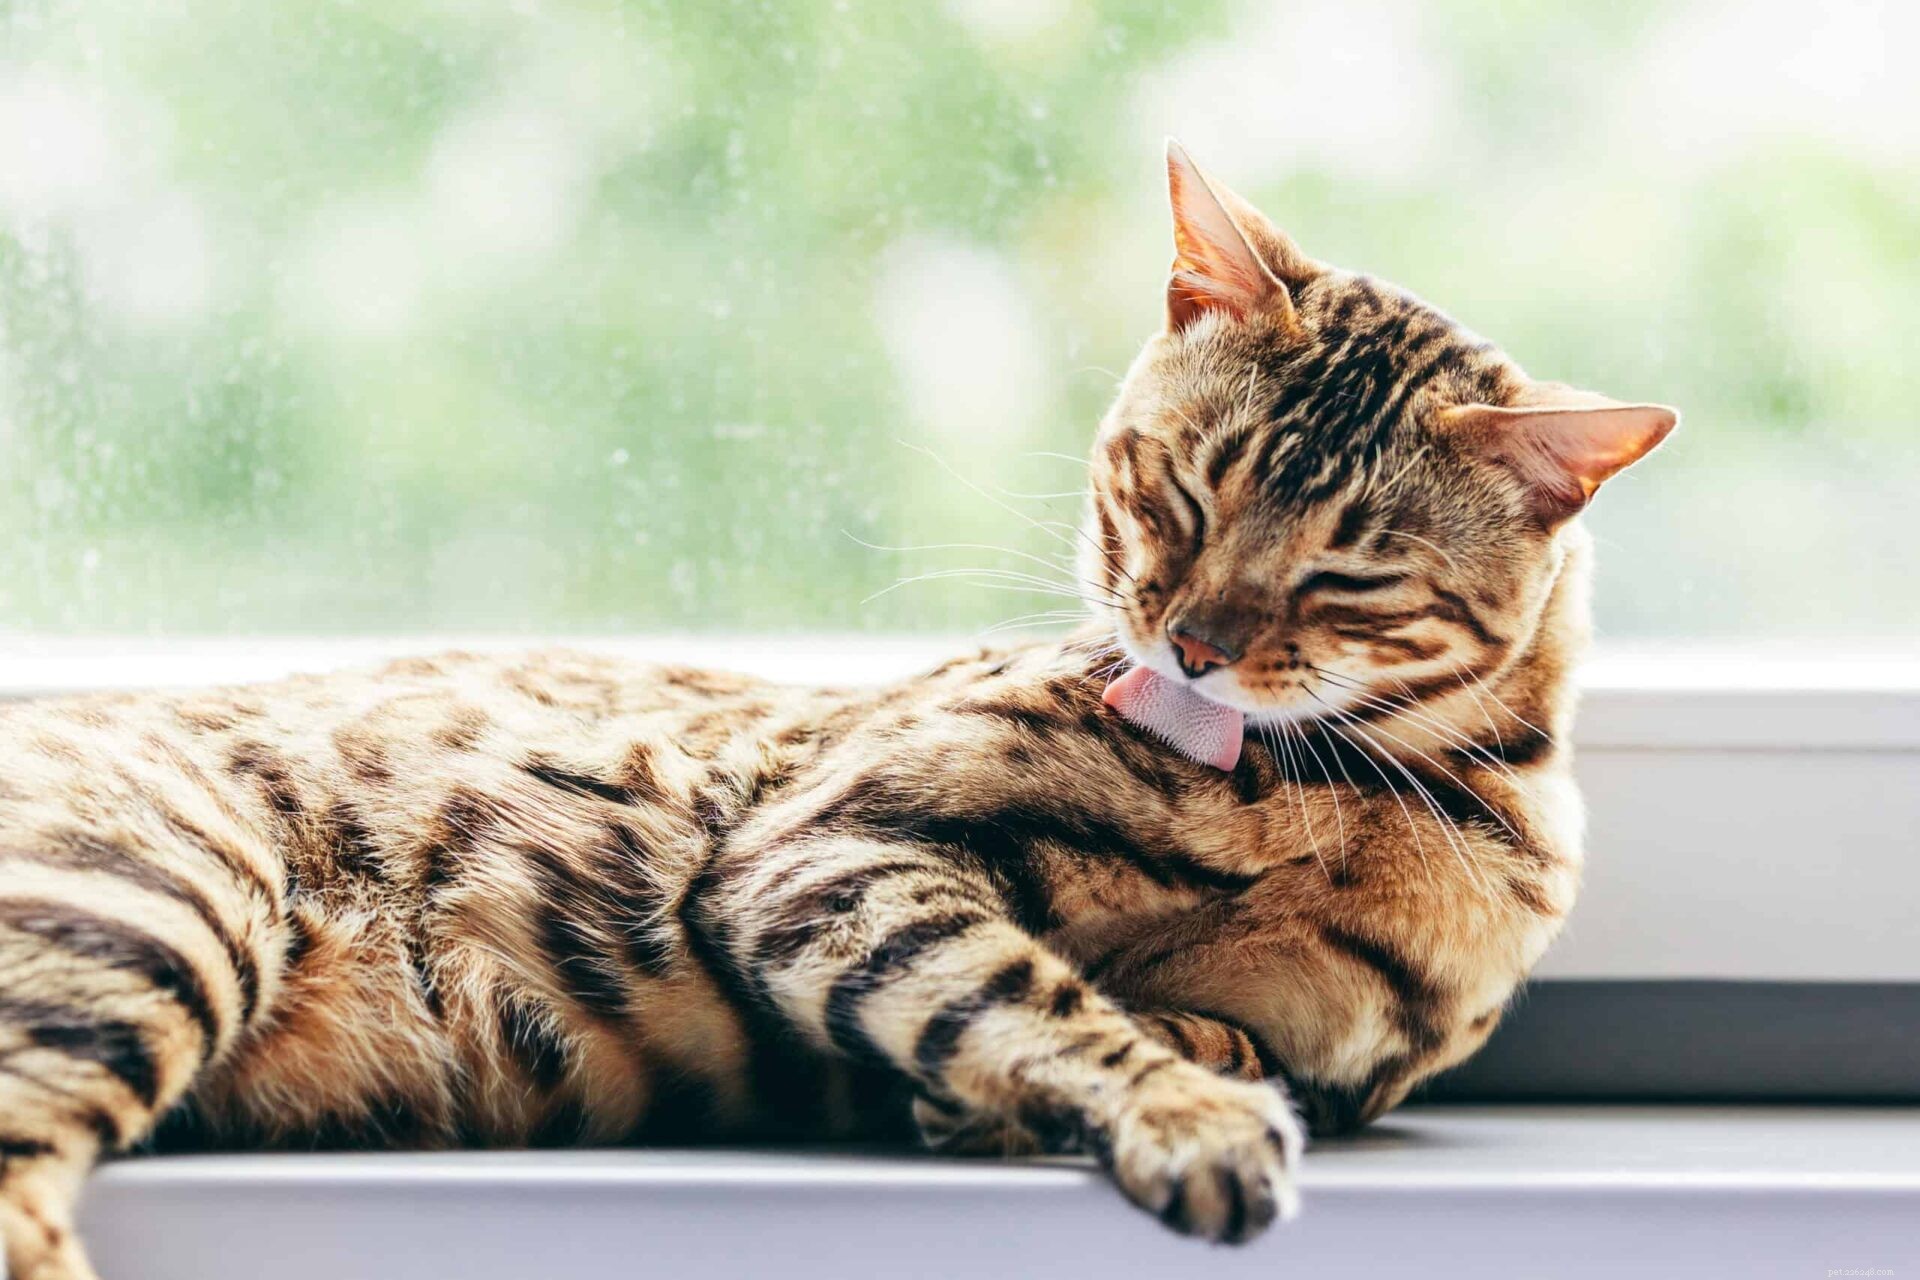 Způsoby, jak se kočky zbavují stresu